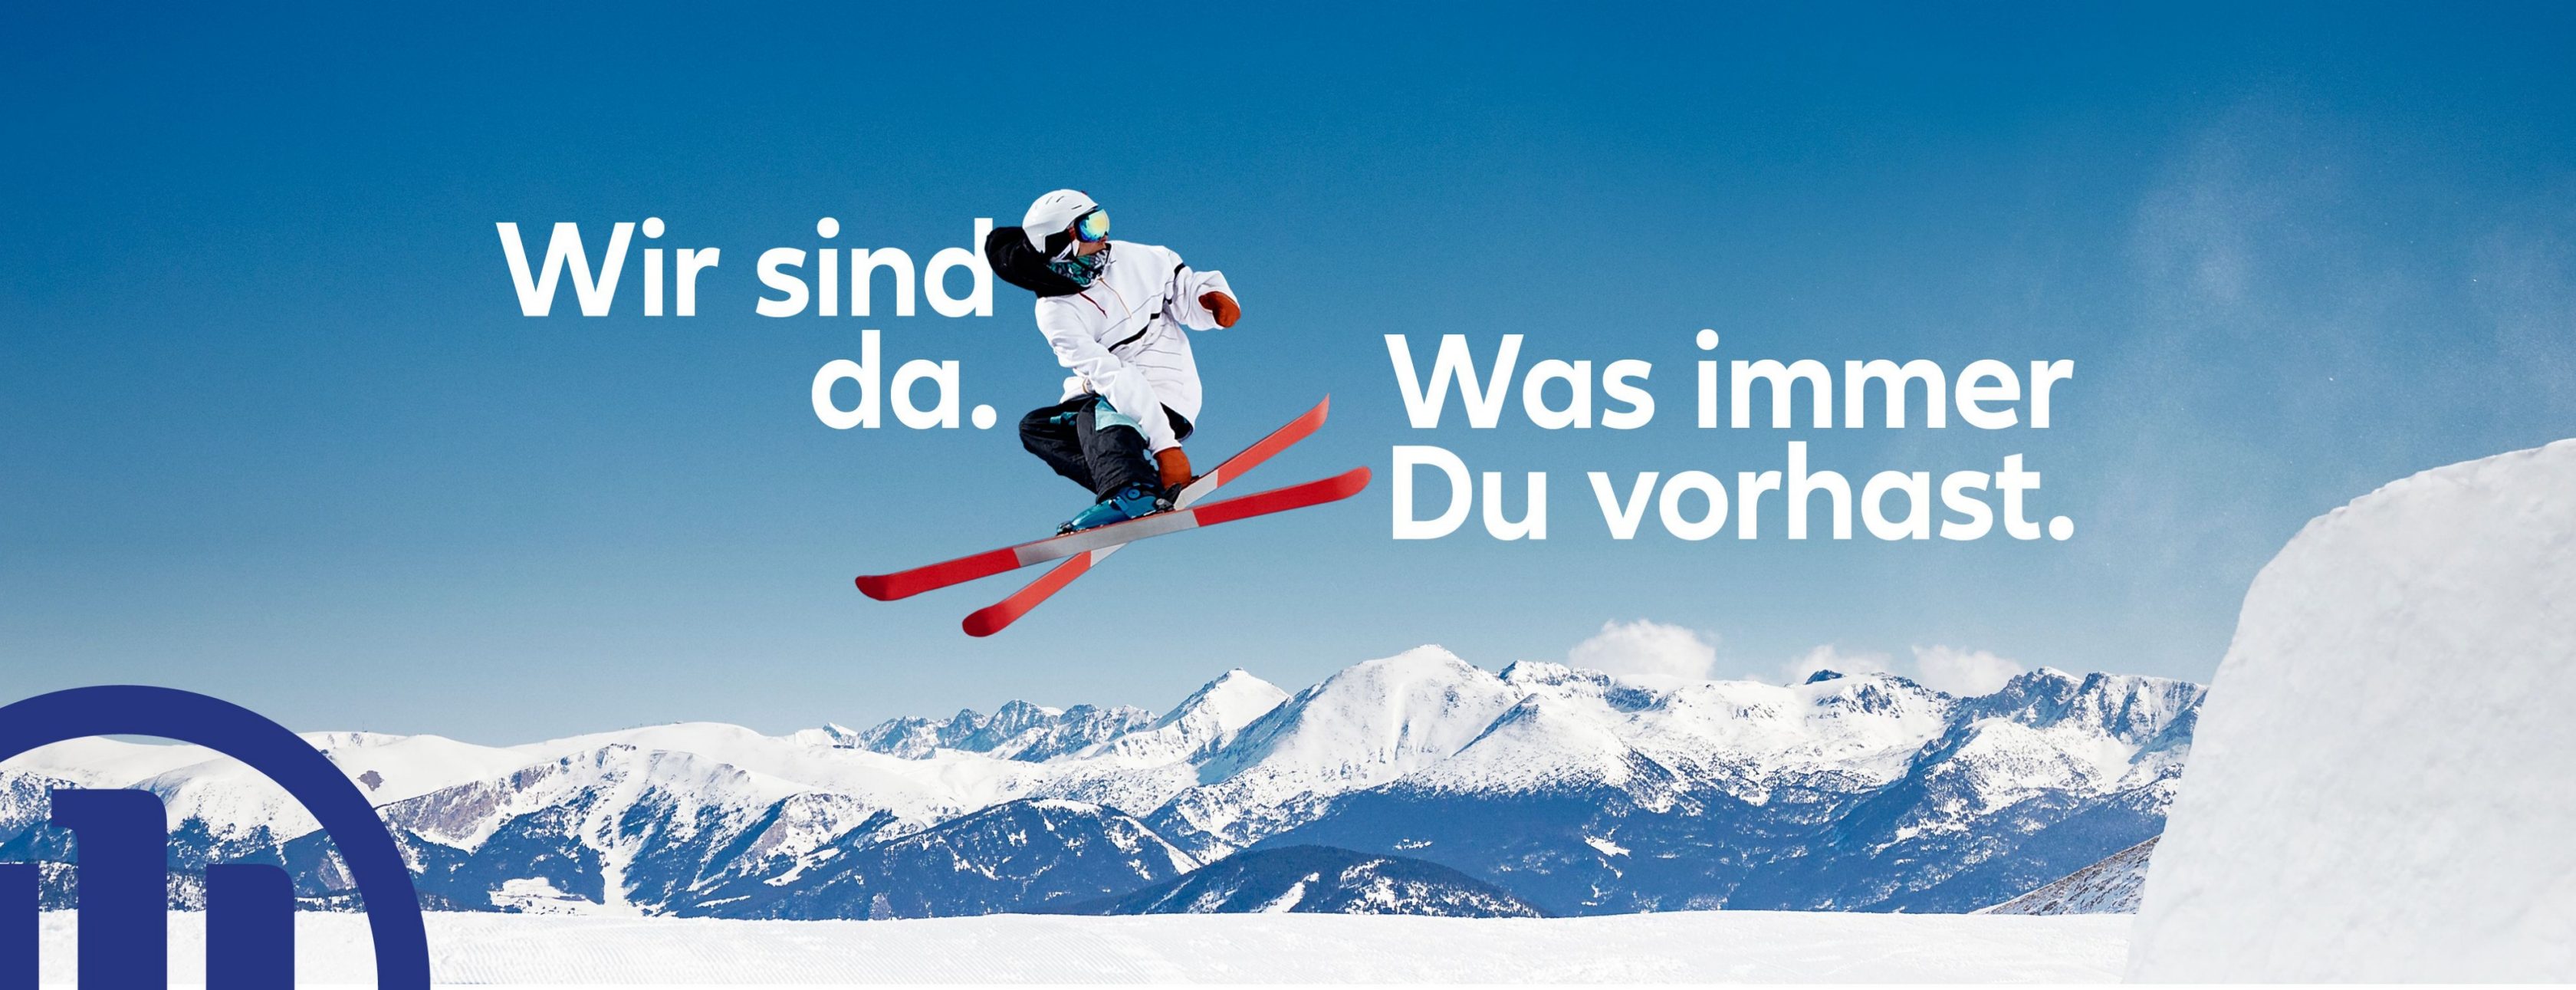 Allianz Versicherung Jürgen Ewald München - Skispringer Winter